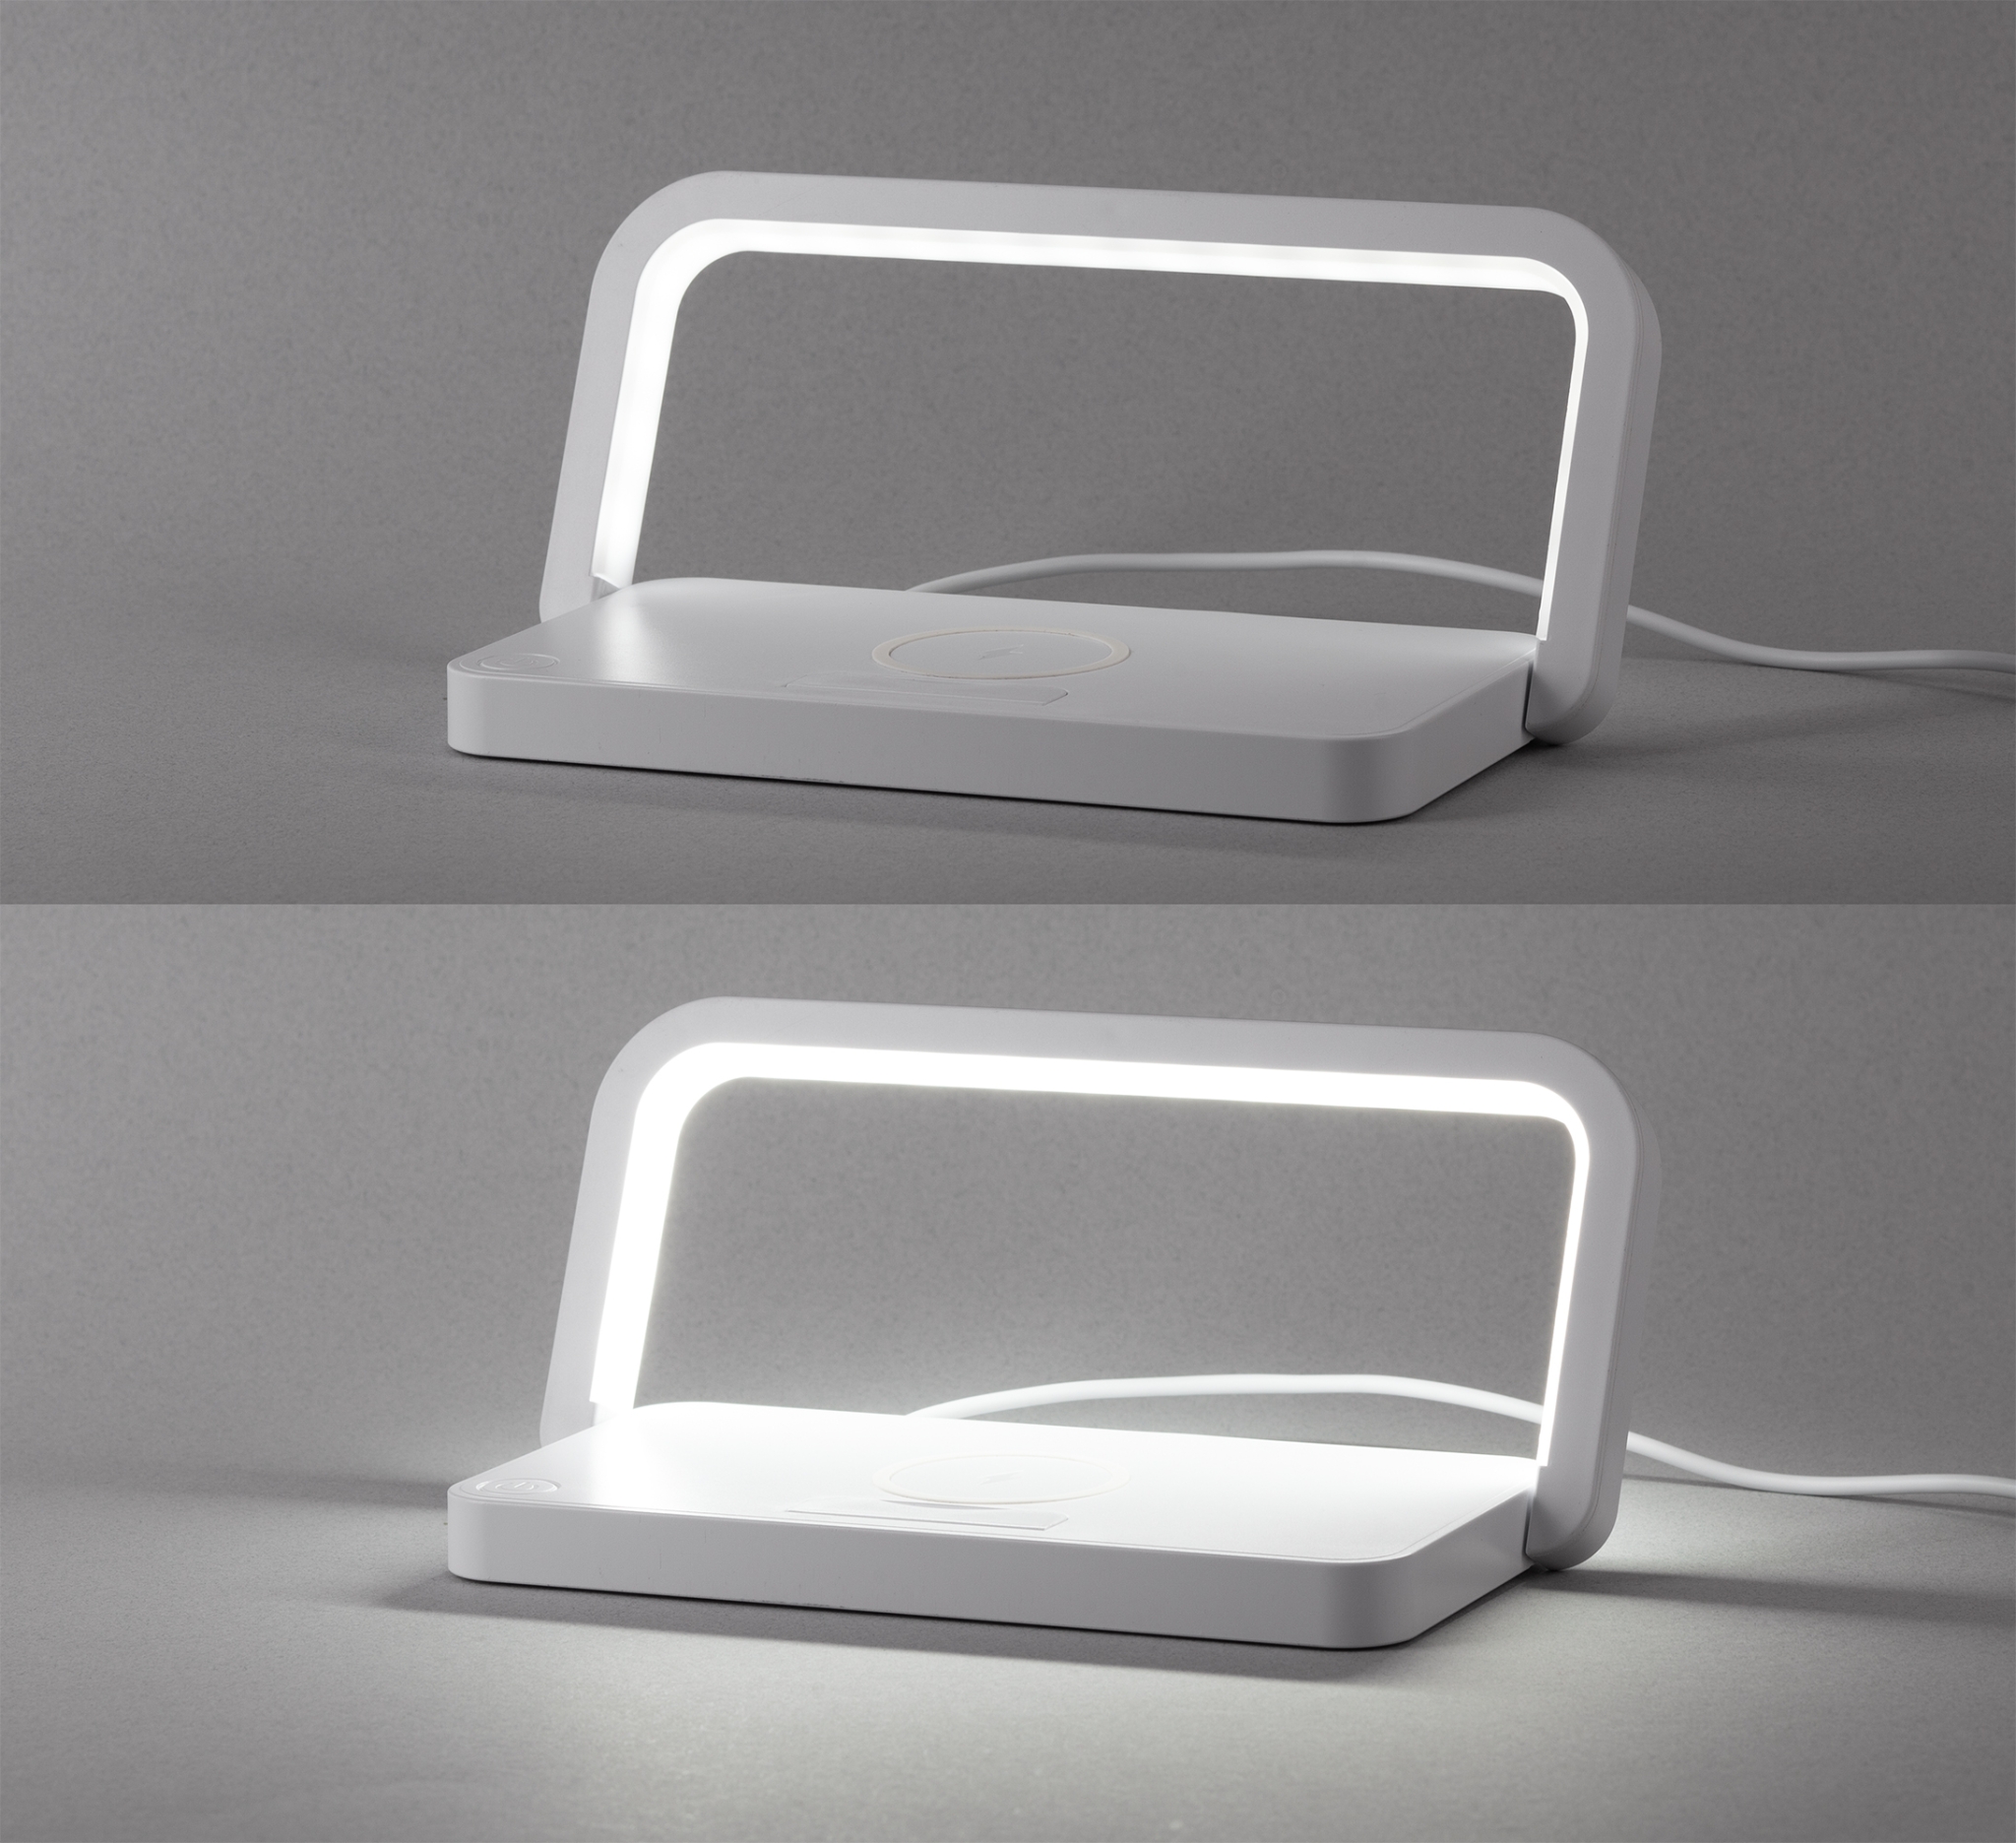 Лампа складная "Smart Light" с беспроводным (10W) зарядным устройством и подставкой для смартфона, белый, пластик